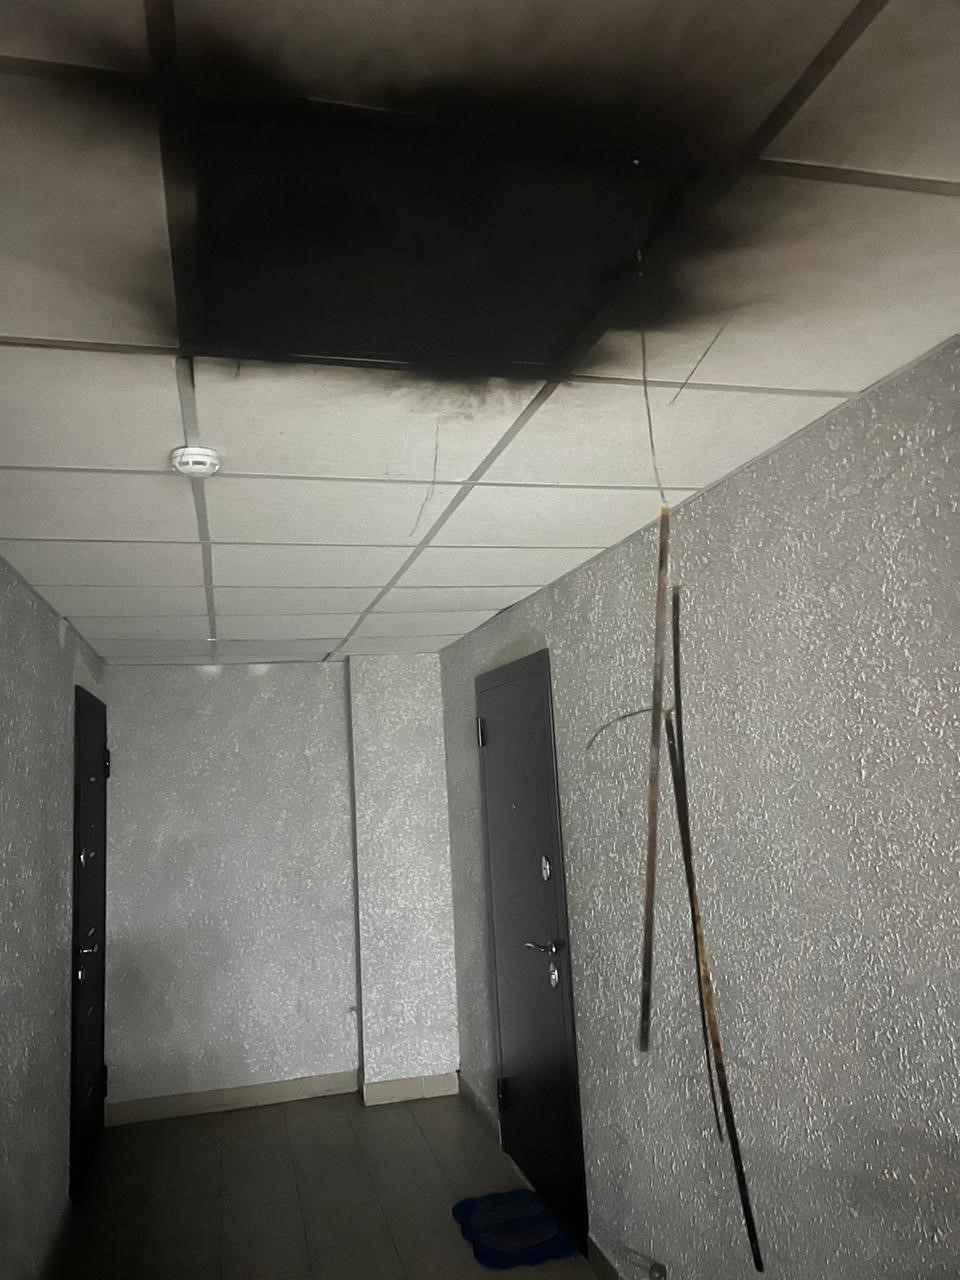 «Оголенные оплавившиеся провода так и свисают!» Пожар начался на 15 этаже многоэтажки в Новороссийске, а противопожарная сигнализация не сработала